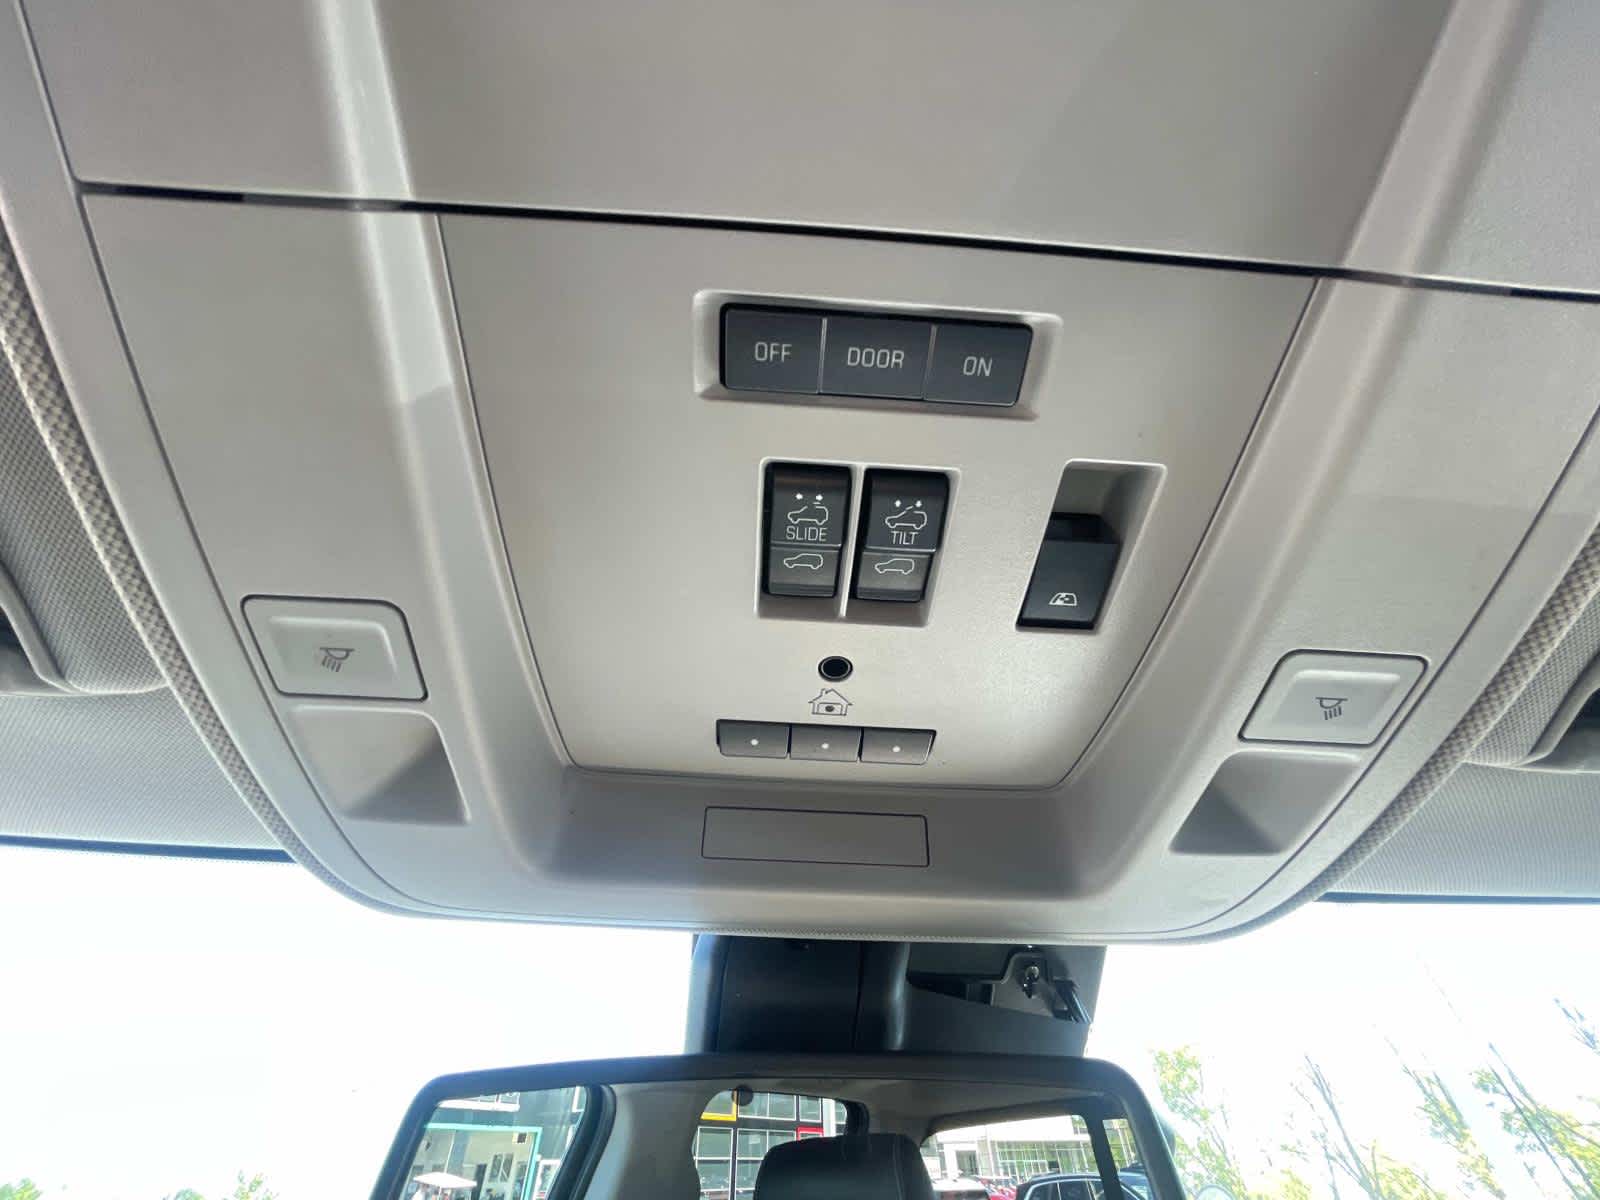 2018 GMC Sierra 2500HD Denali 4WD Crew Cab 153.7 31